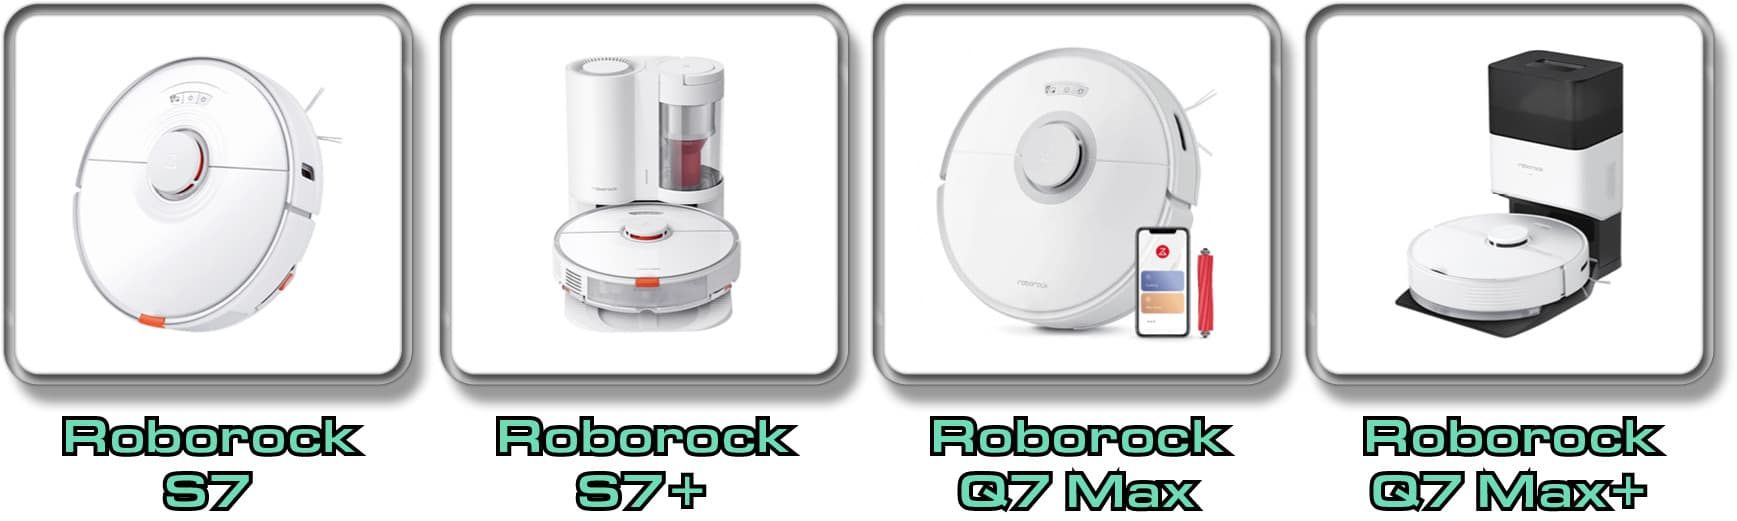 Das sind die verschiedenen Roborock Modelle der Q7-Serie 